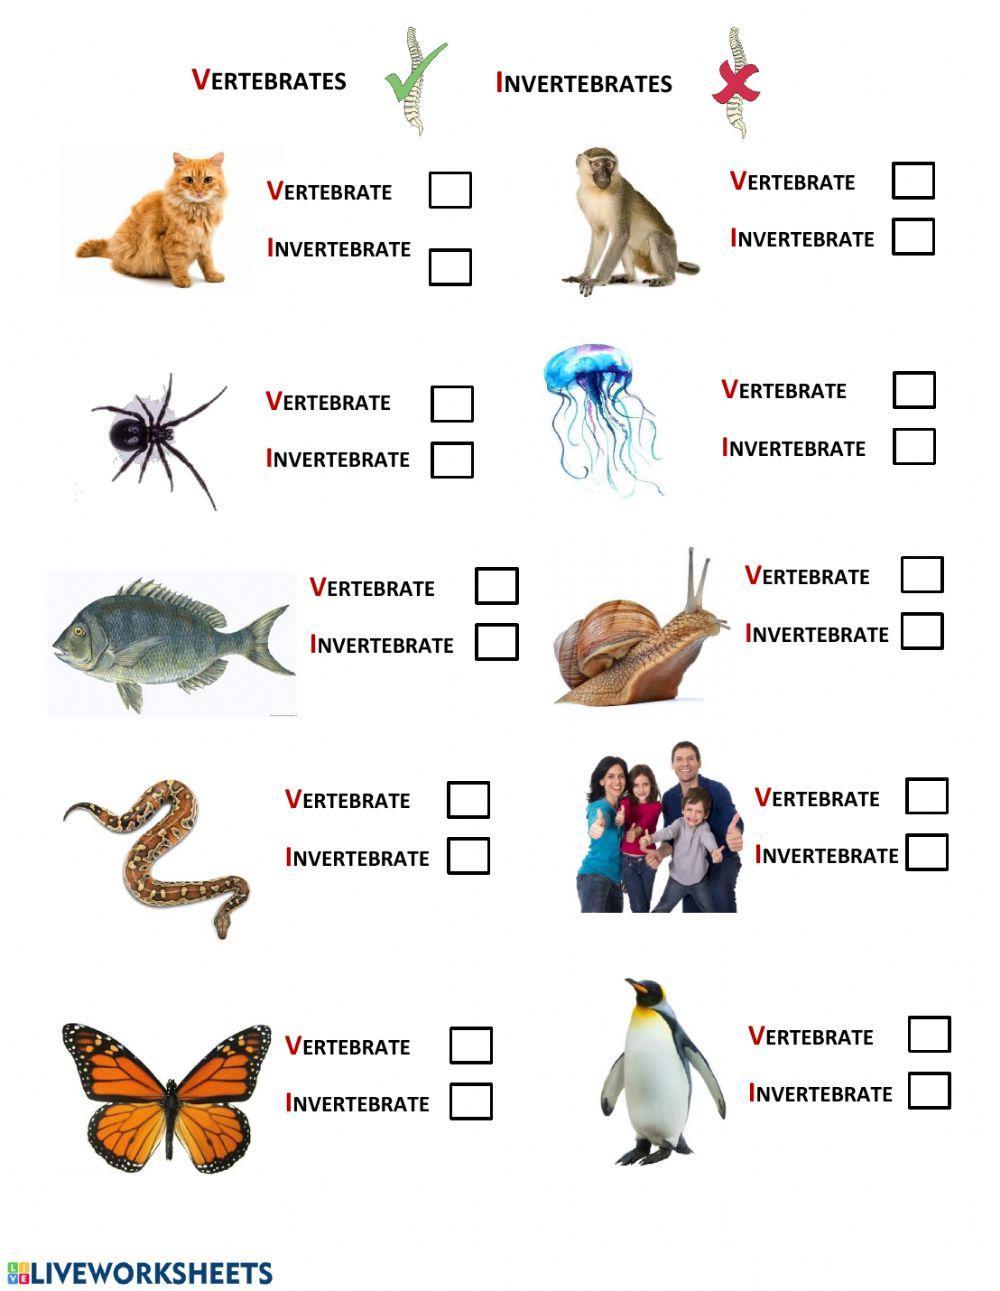 Vetebrates vs Invertebrates